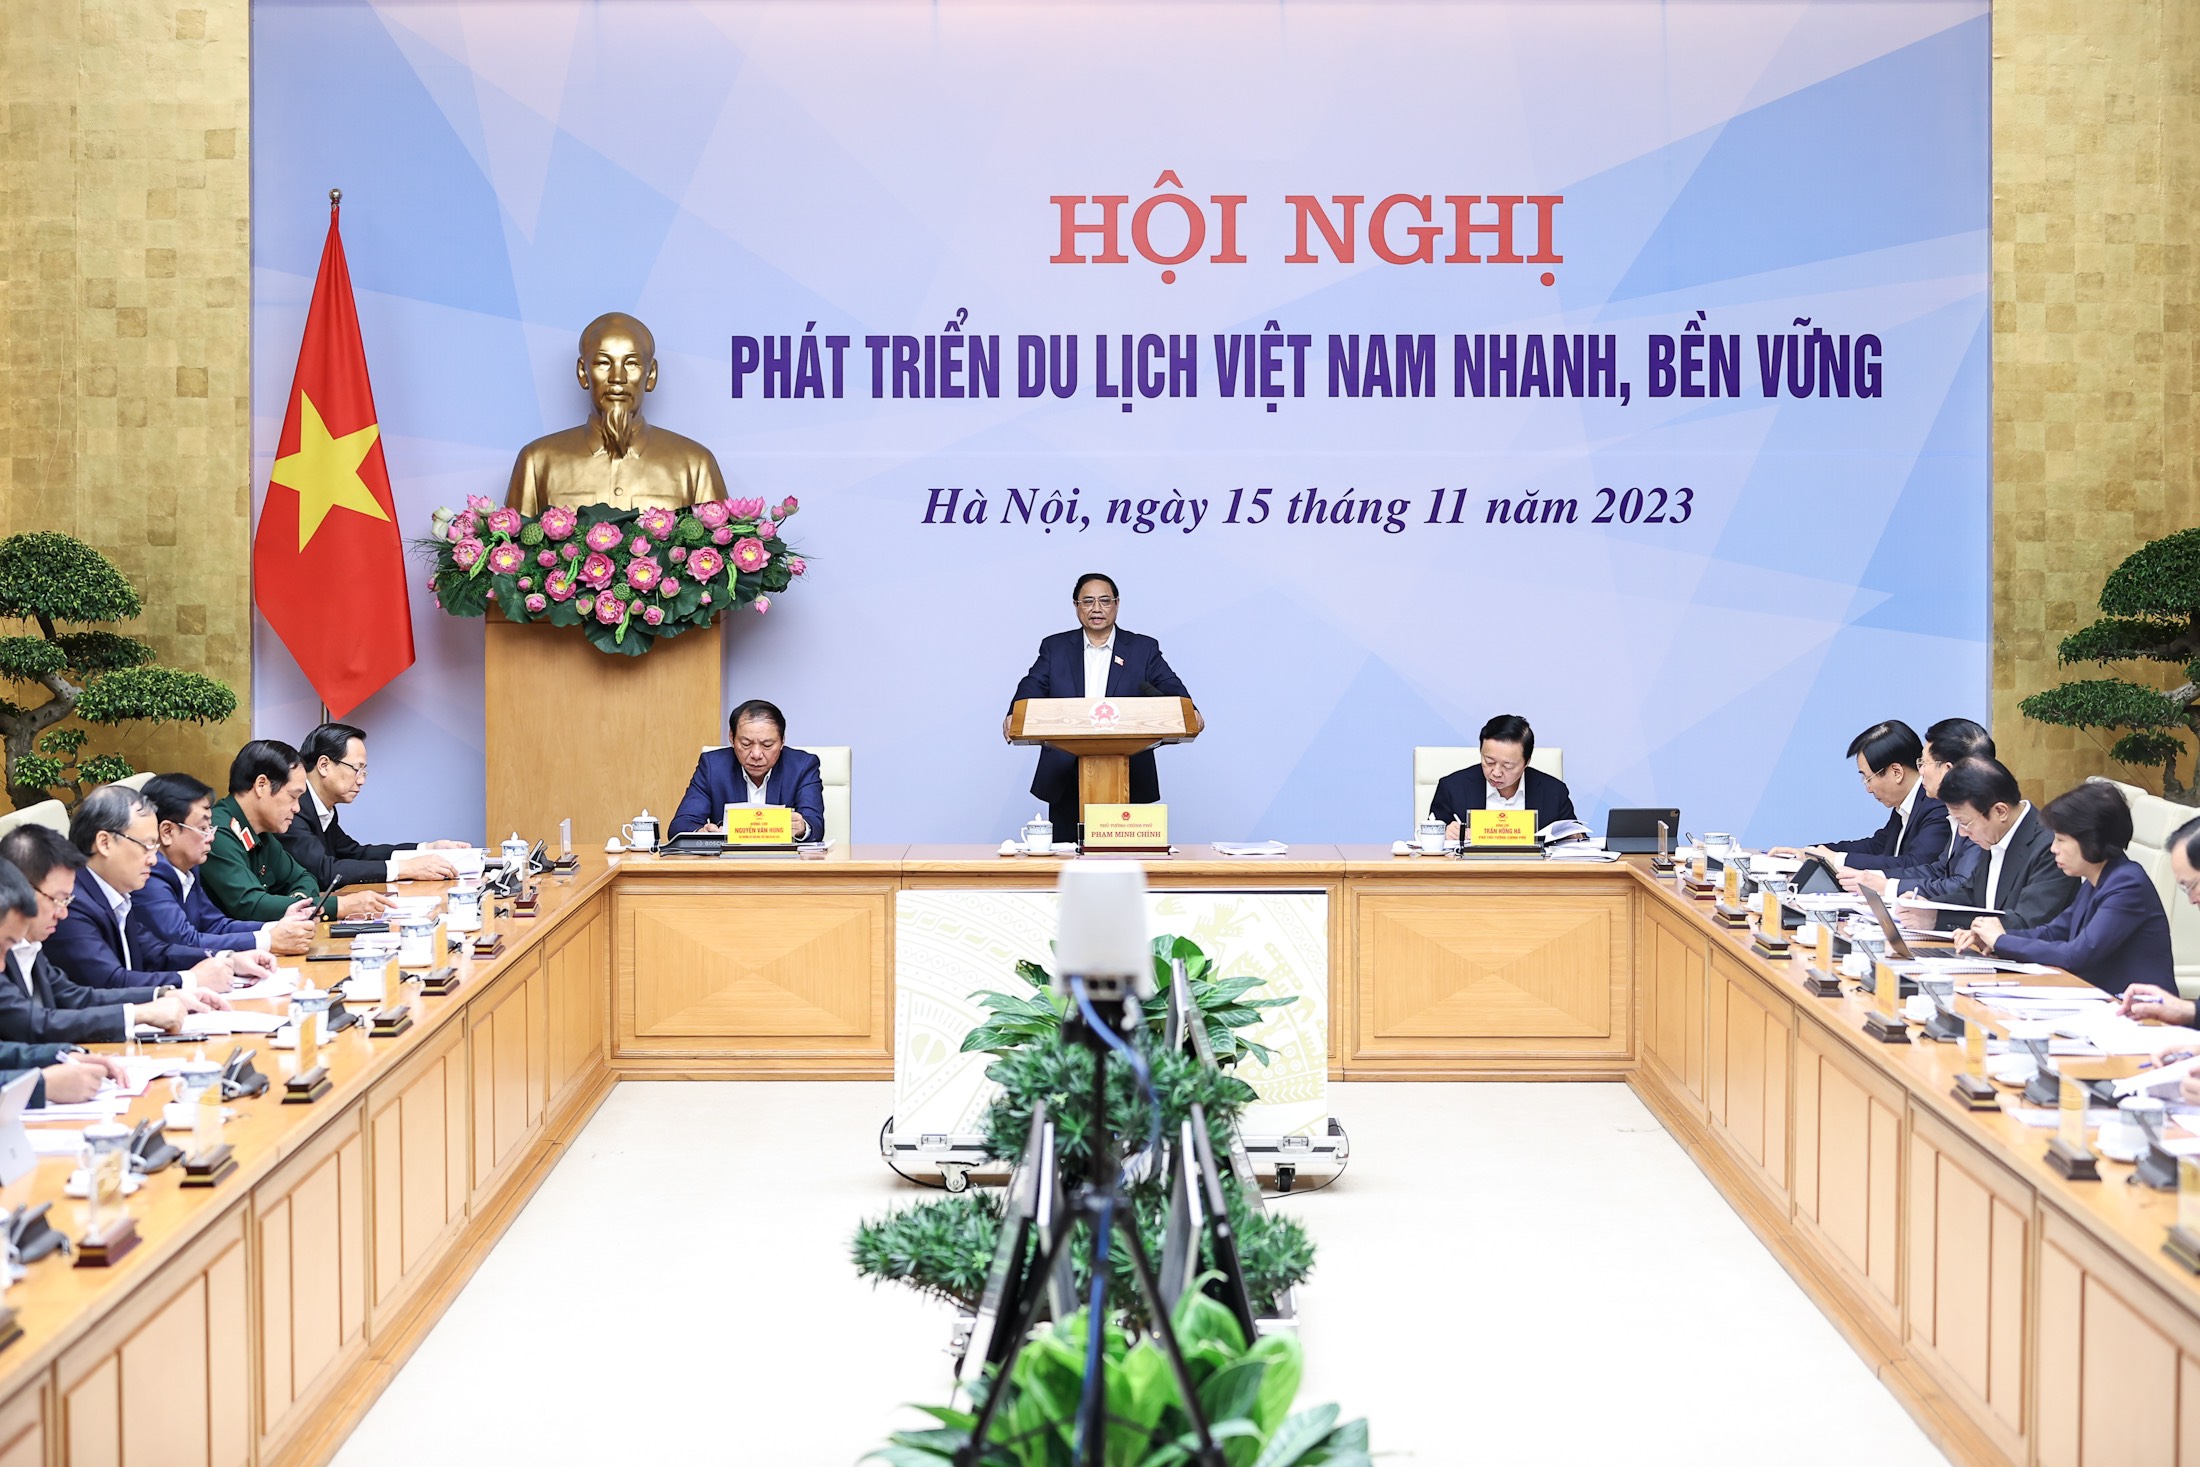 Hội nghị Phát triển du lịch Việt Nam nhanh, bền vững diễn ra sáng 15/11 tại Hà Nội, kết nối tới trụ sở UBND các tỉnh, thành phố trên cả nước